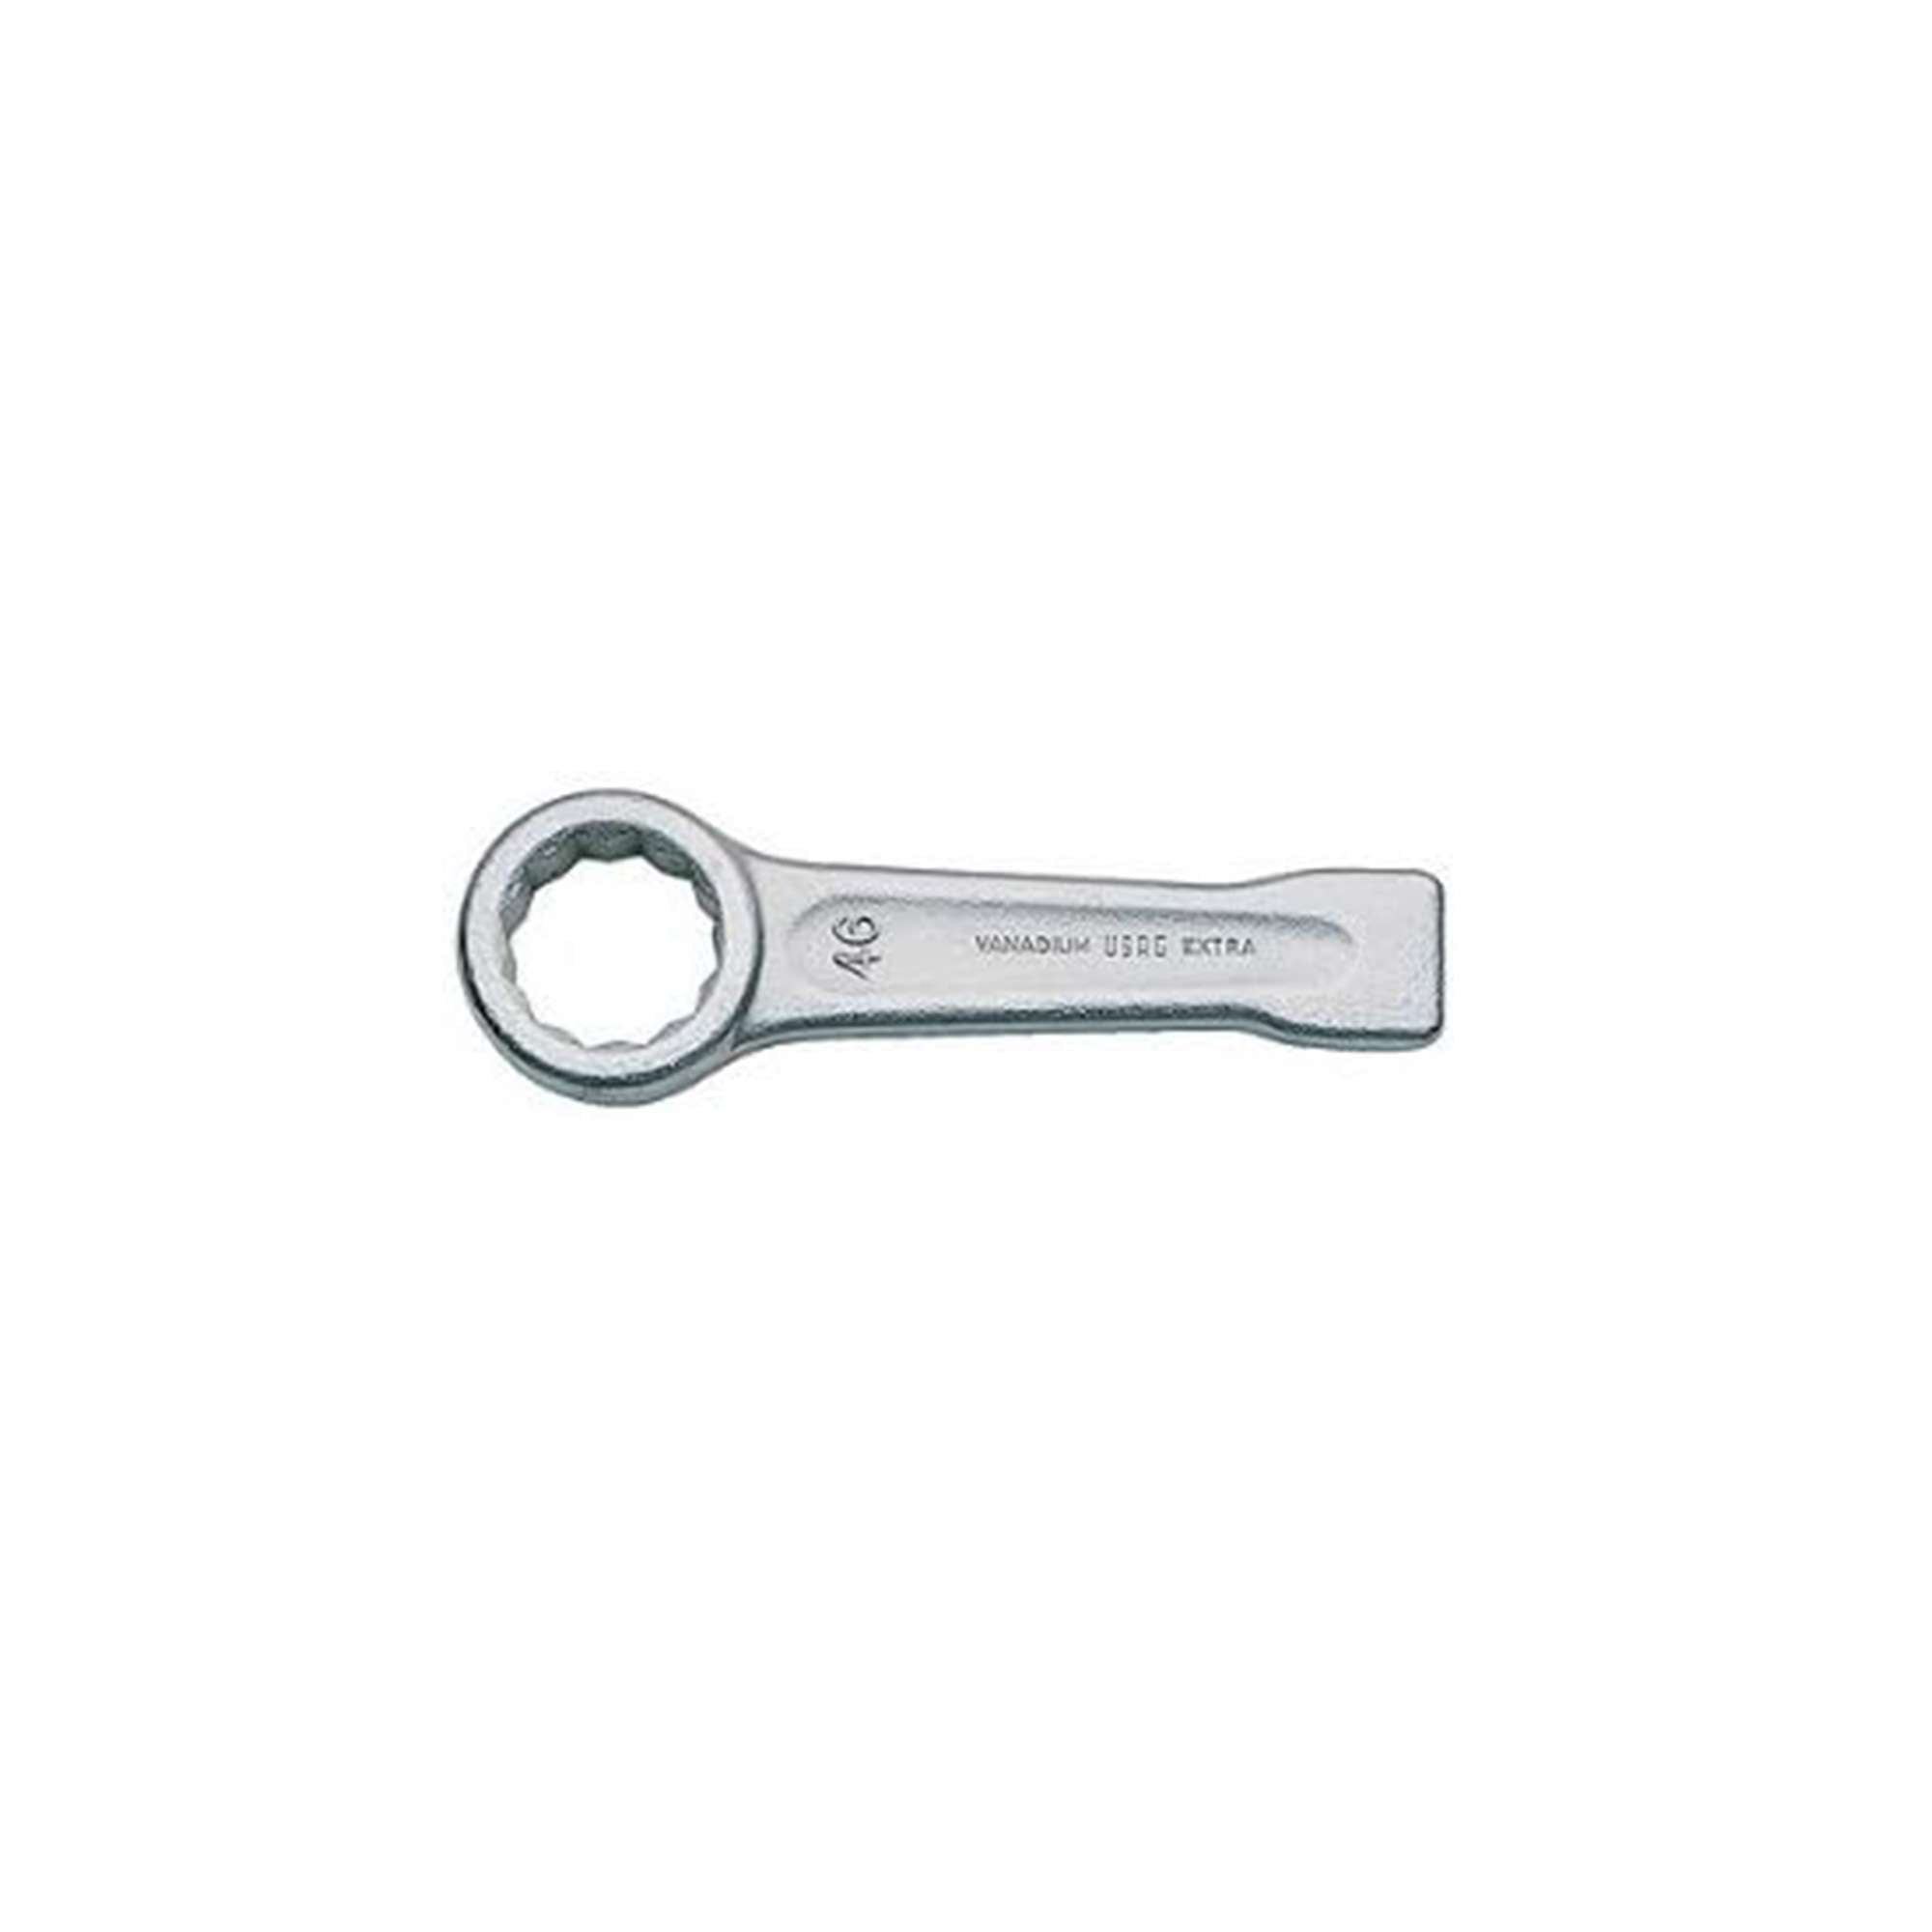 USAG - Single ended bihexagonal slugging wrenches 254 - U02540036 - 50mm opening